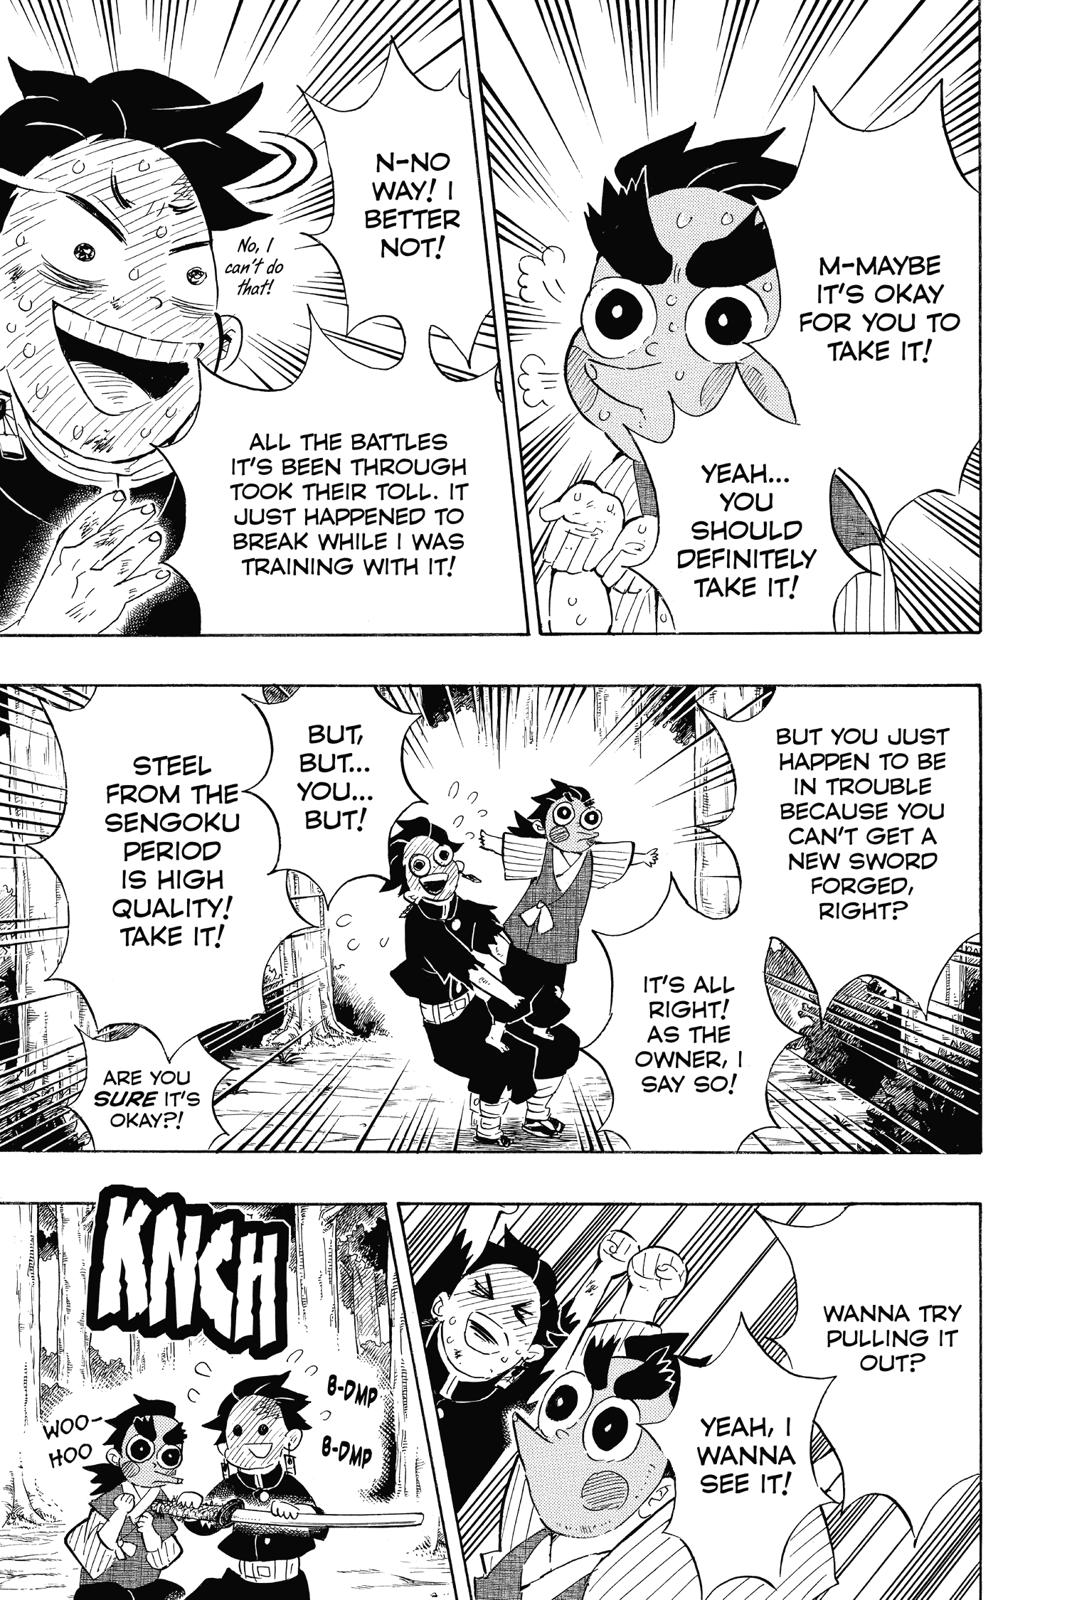 Demon Slayer Manga Manga Chapter - 105 - image 3